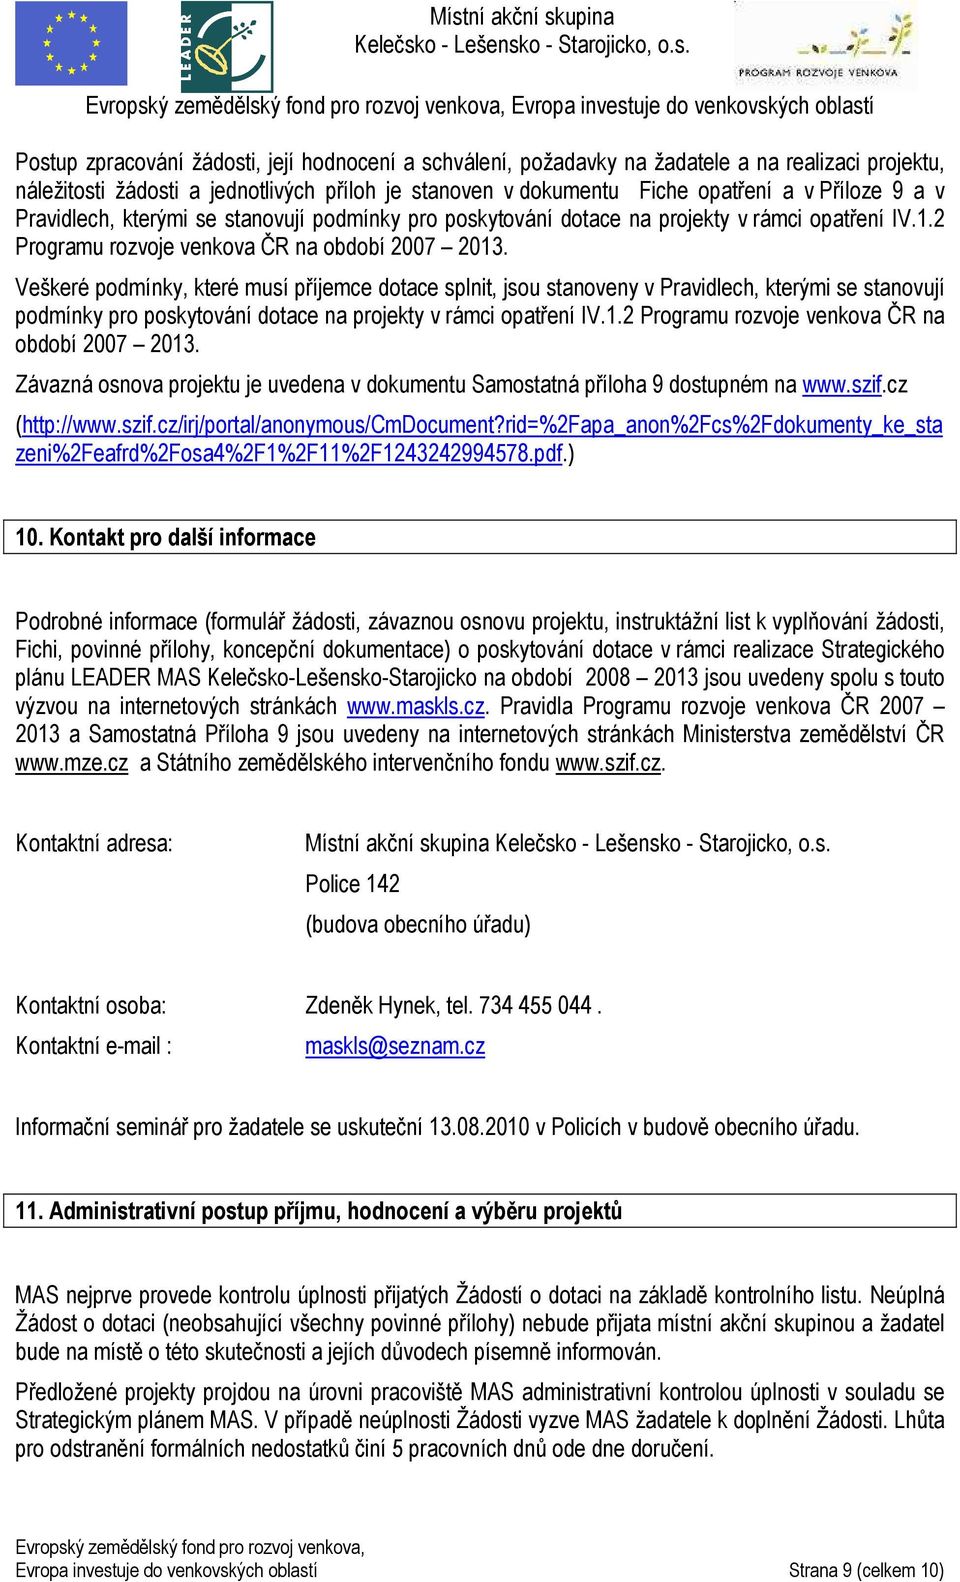 Veškeré podmínky, které musí příjemce dotace splnit, jsou stanoveny  Závazná osnova projektu je uvedena v dokumentu Samostatná příloha 9 dostupném na www.szif.cz (http://www.szif.cz/irj/portal/anonymous/cmdocument?